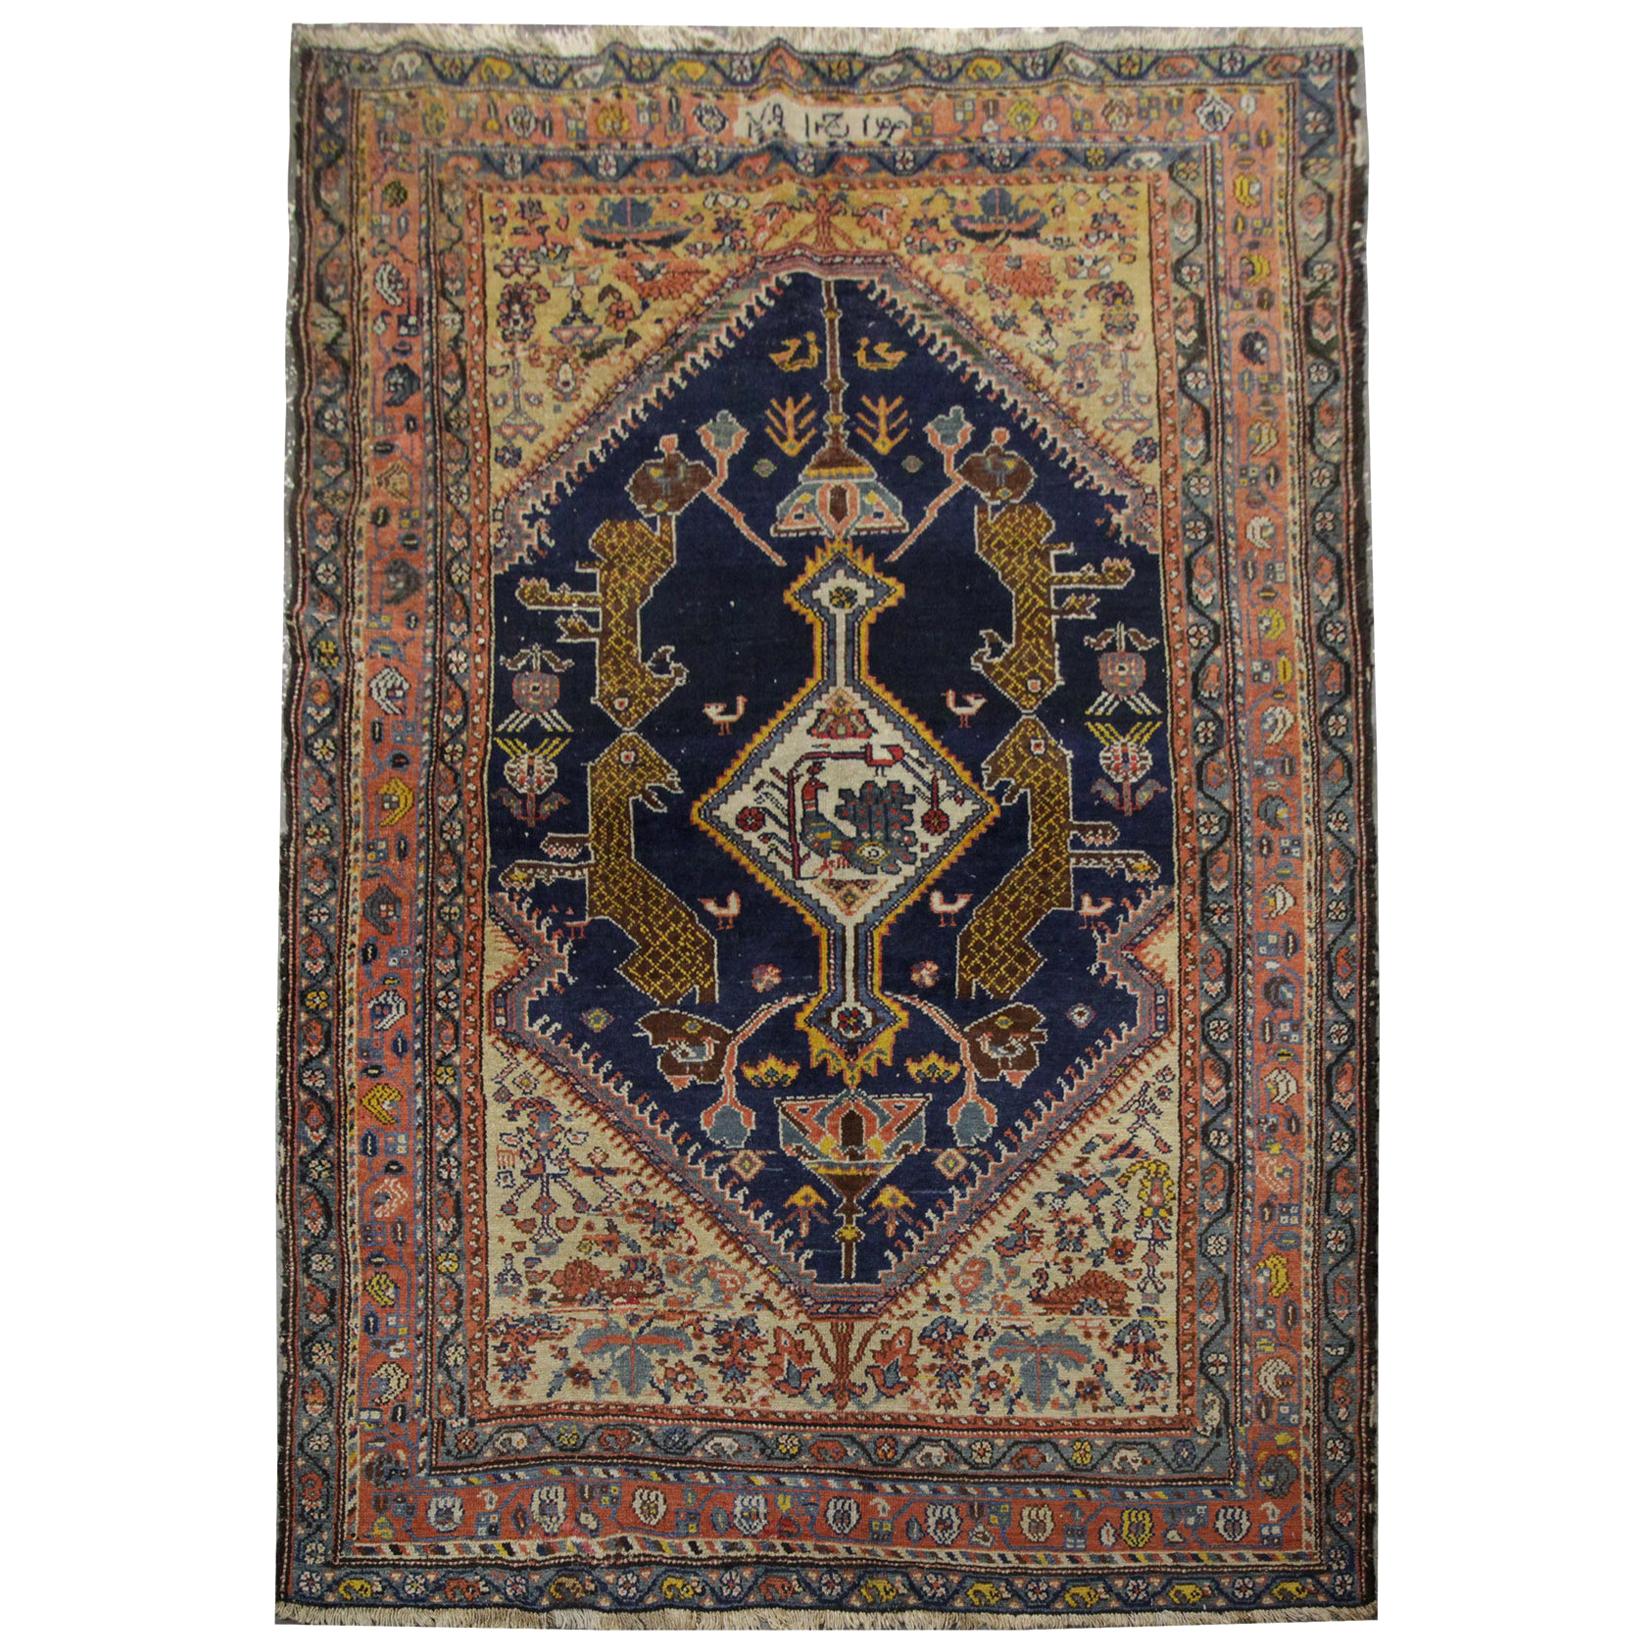 Tapis antique:: tapis arménien:: tapis caucasien bleu et orange:: tapis de salon